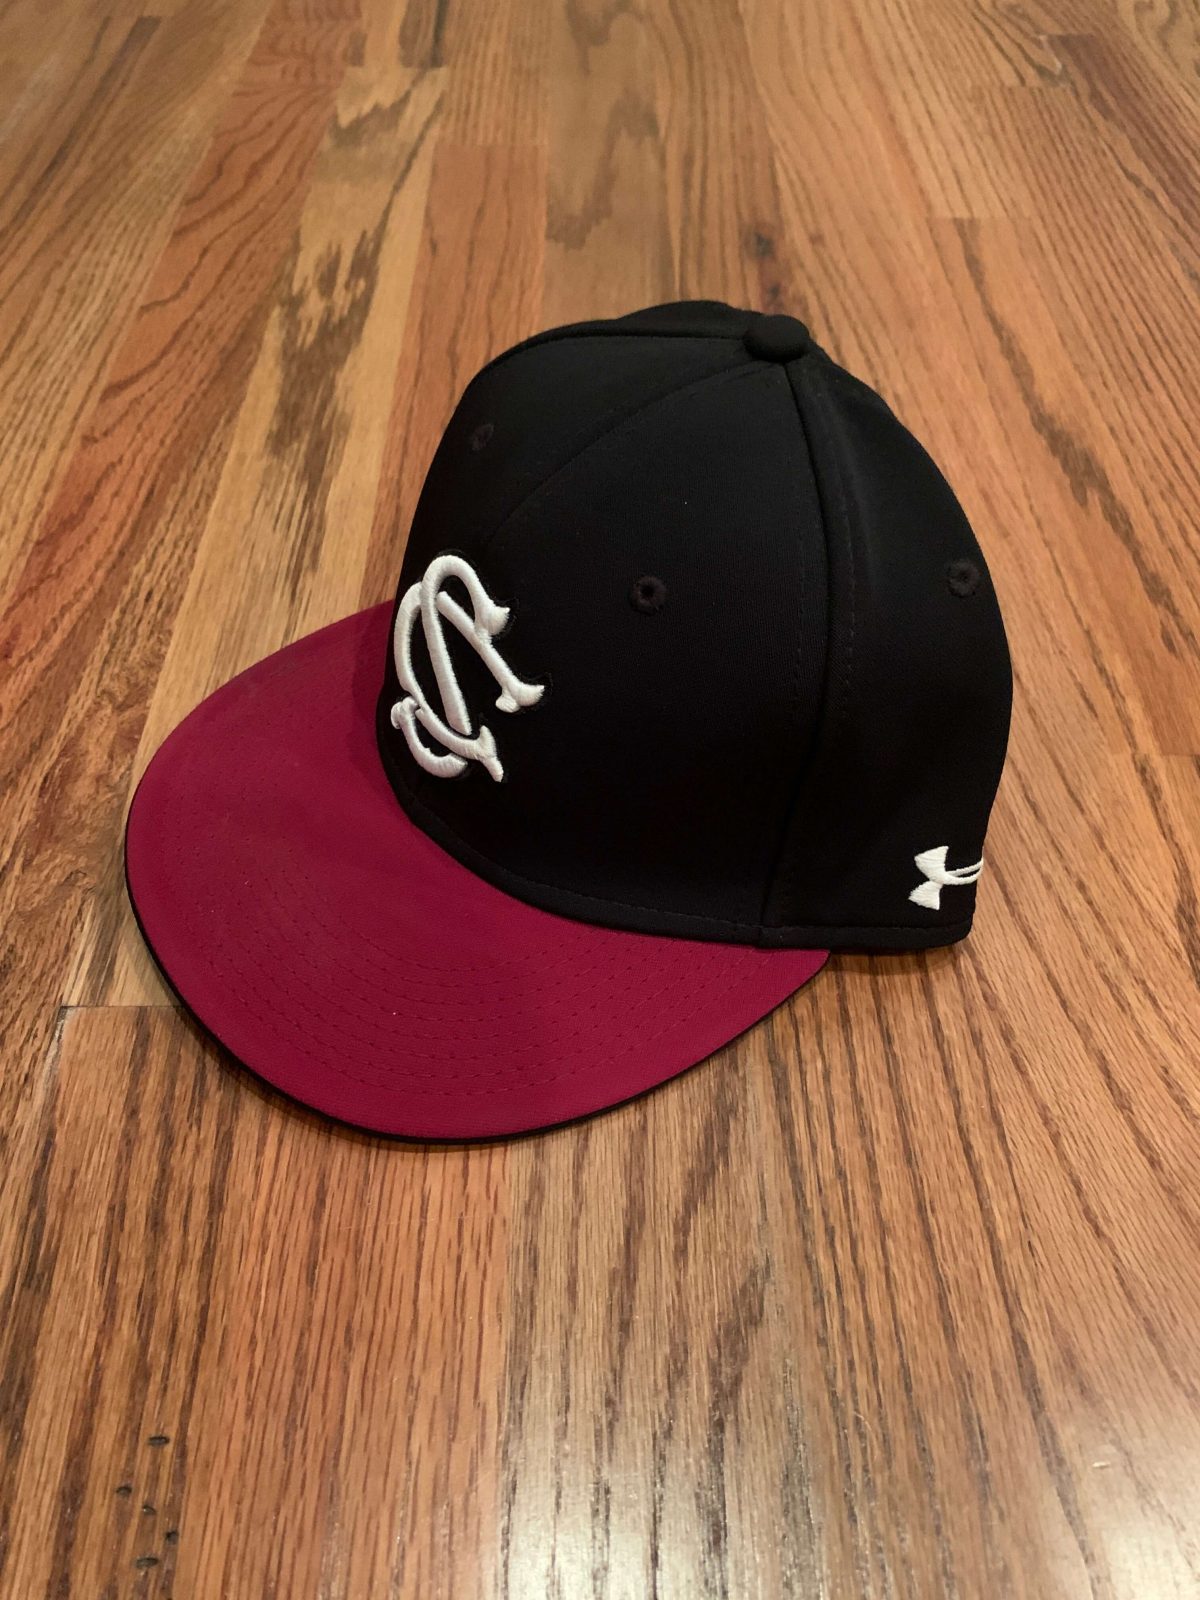 South Carolina Baseball Hat : NARP Clothing